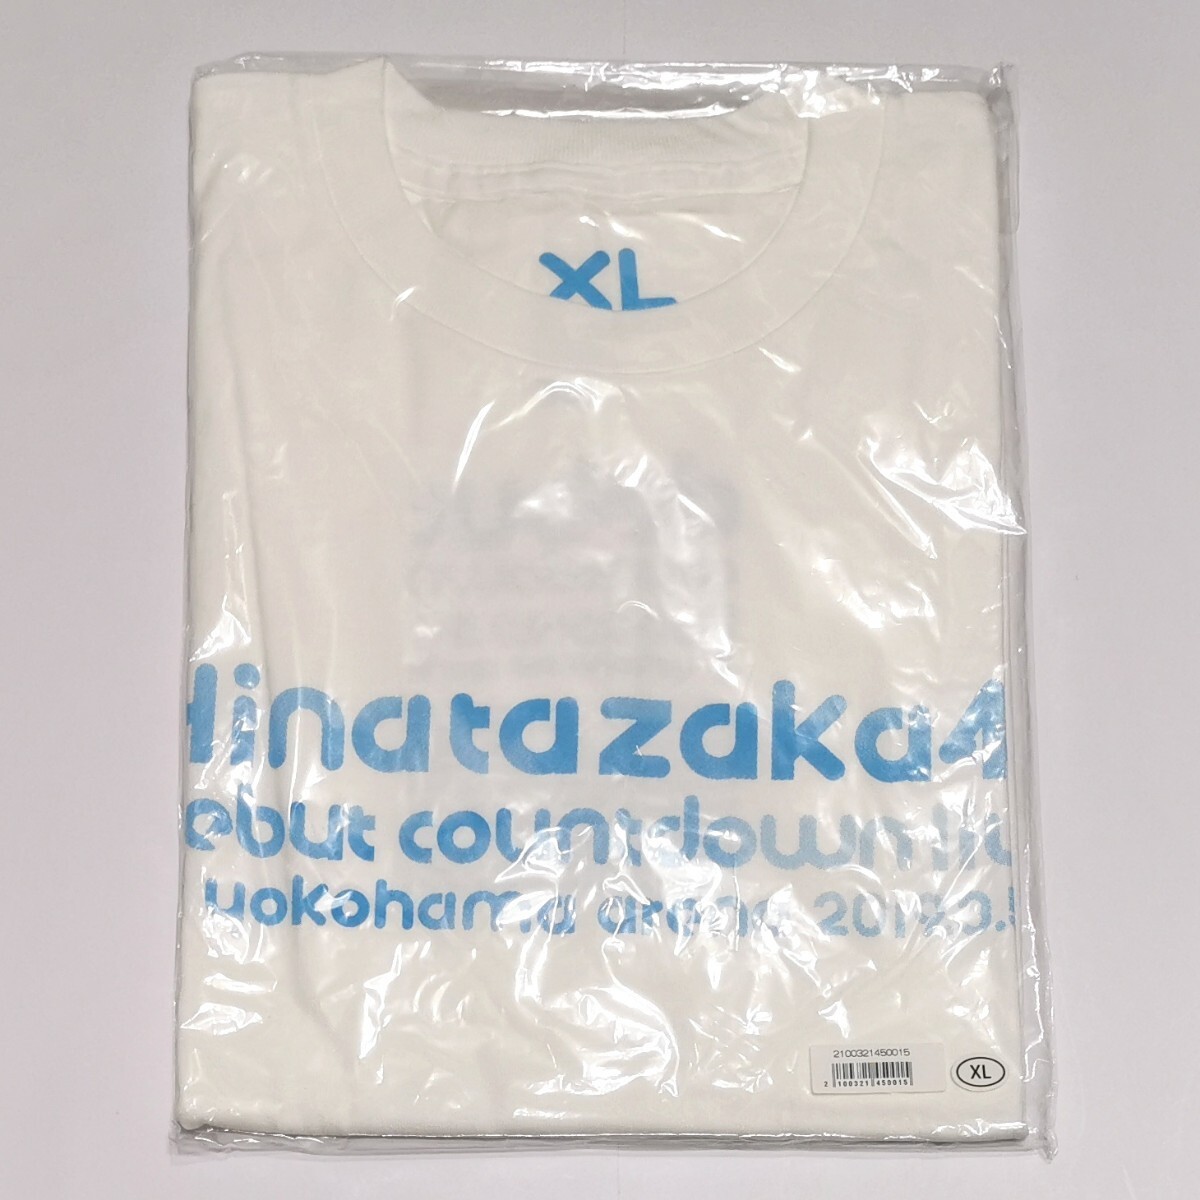 日向坂46 デビューカウントダウンライブ Tシャツ XLサイズの画像1